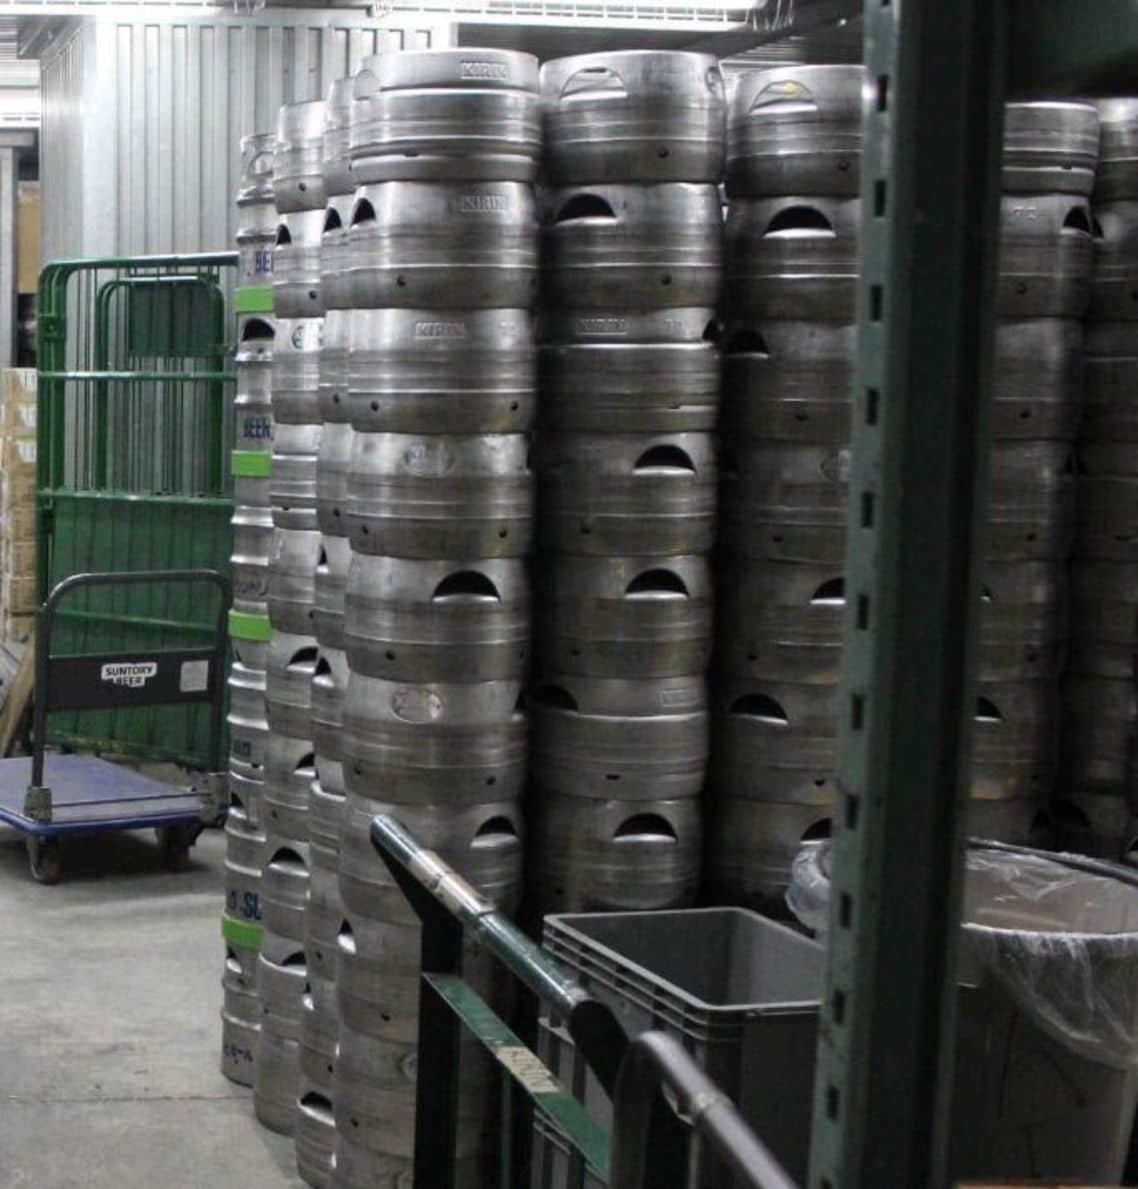 バックヤードの貯蔵庫には大量のビールがあった